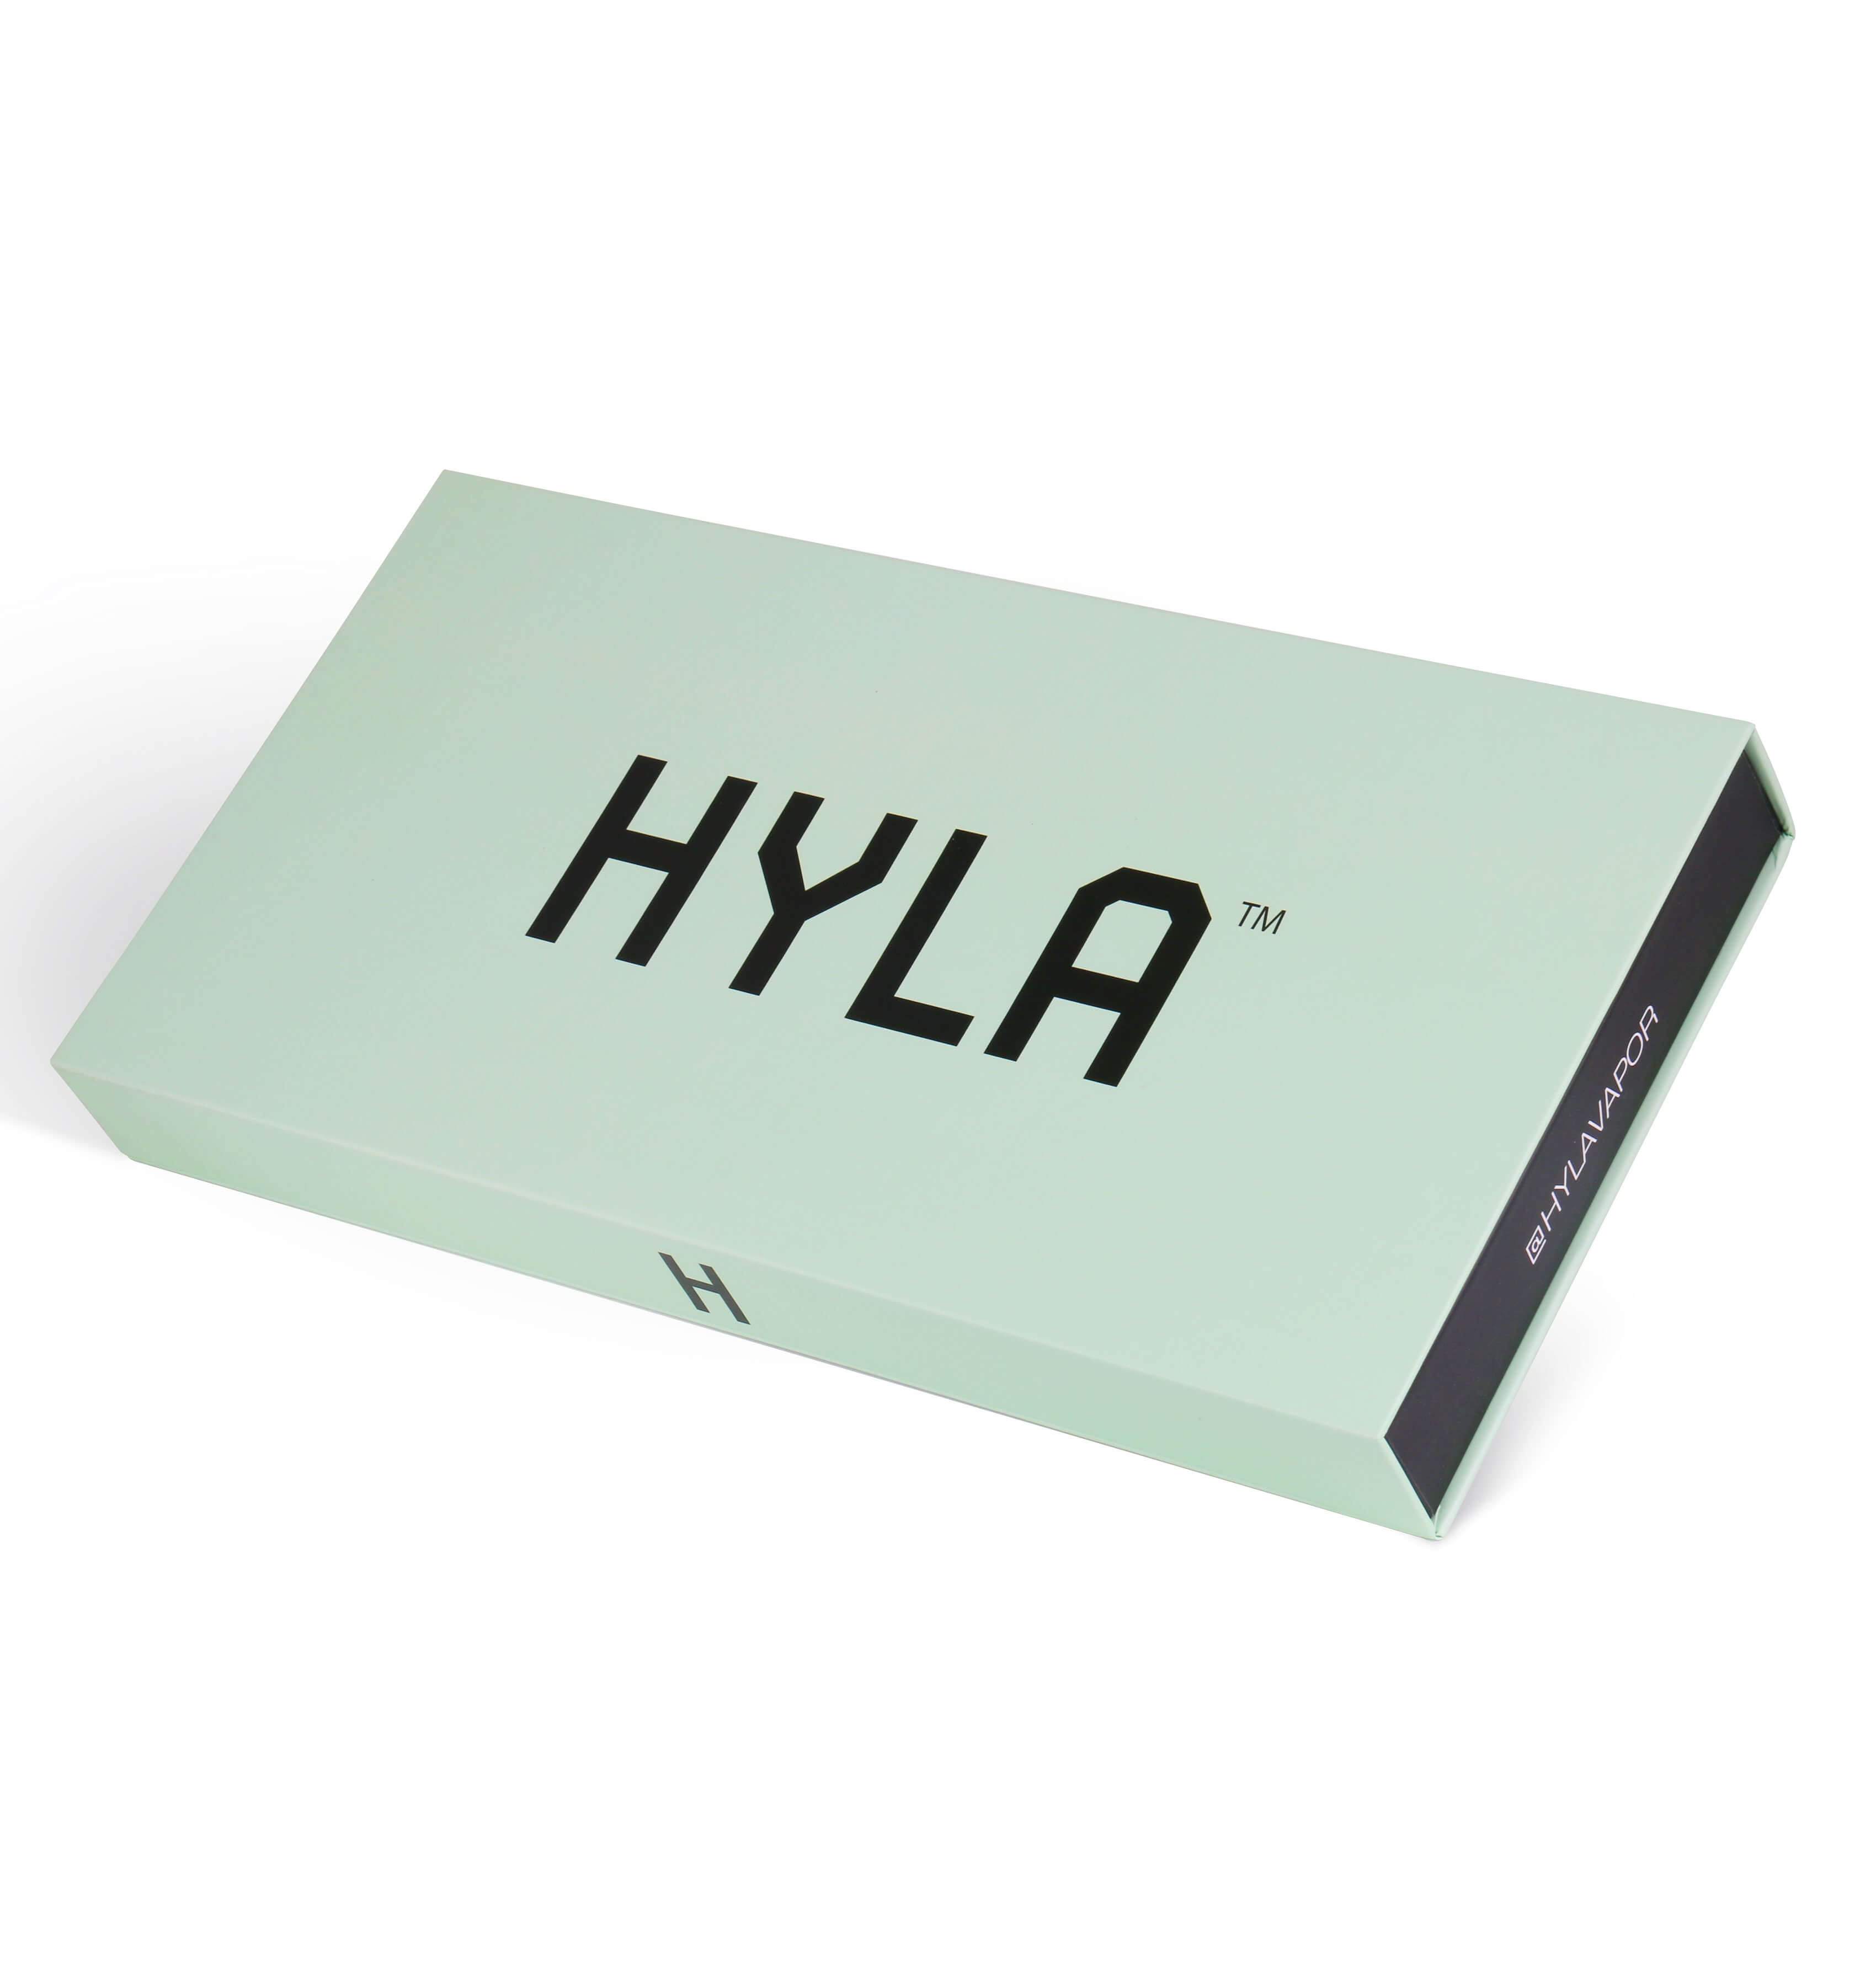 HYLA Gift Box